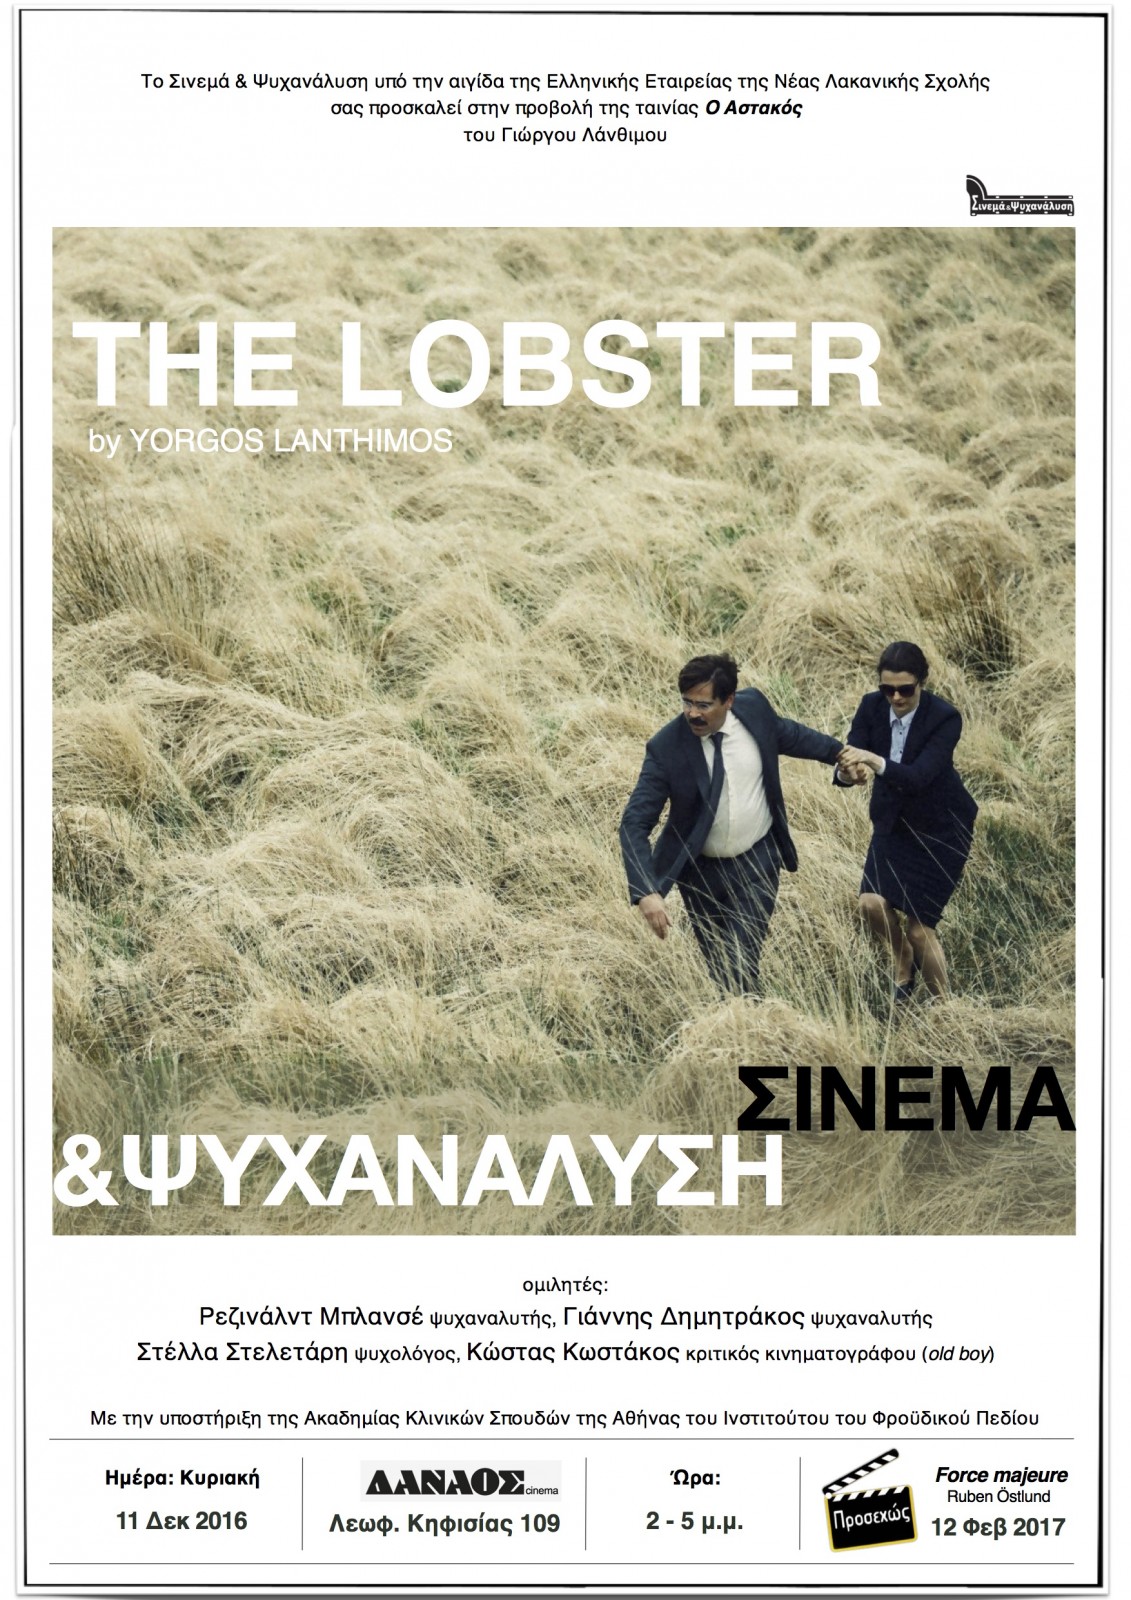 Σινεμά & Ψυχανάλυση  – “The Lobster” – 11.12.2016